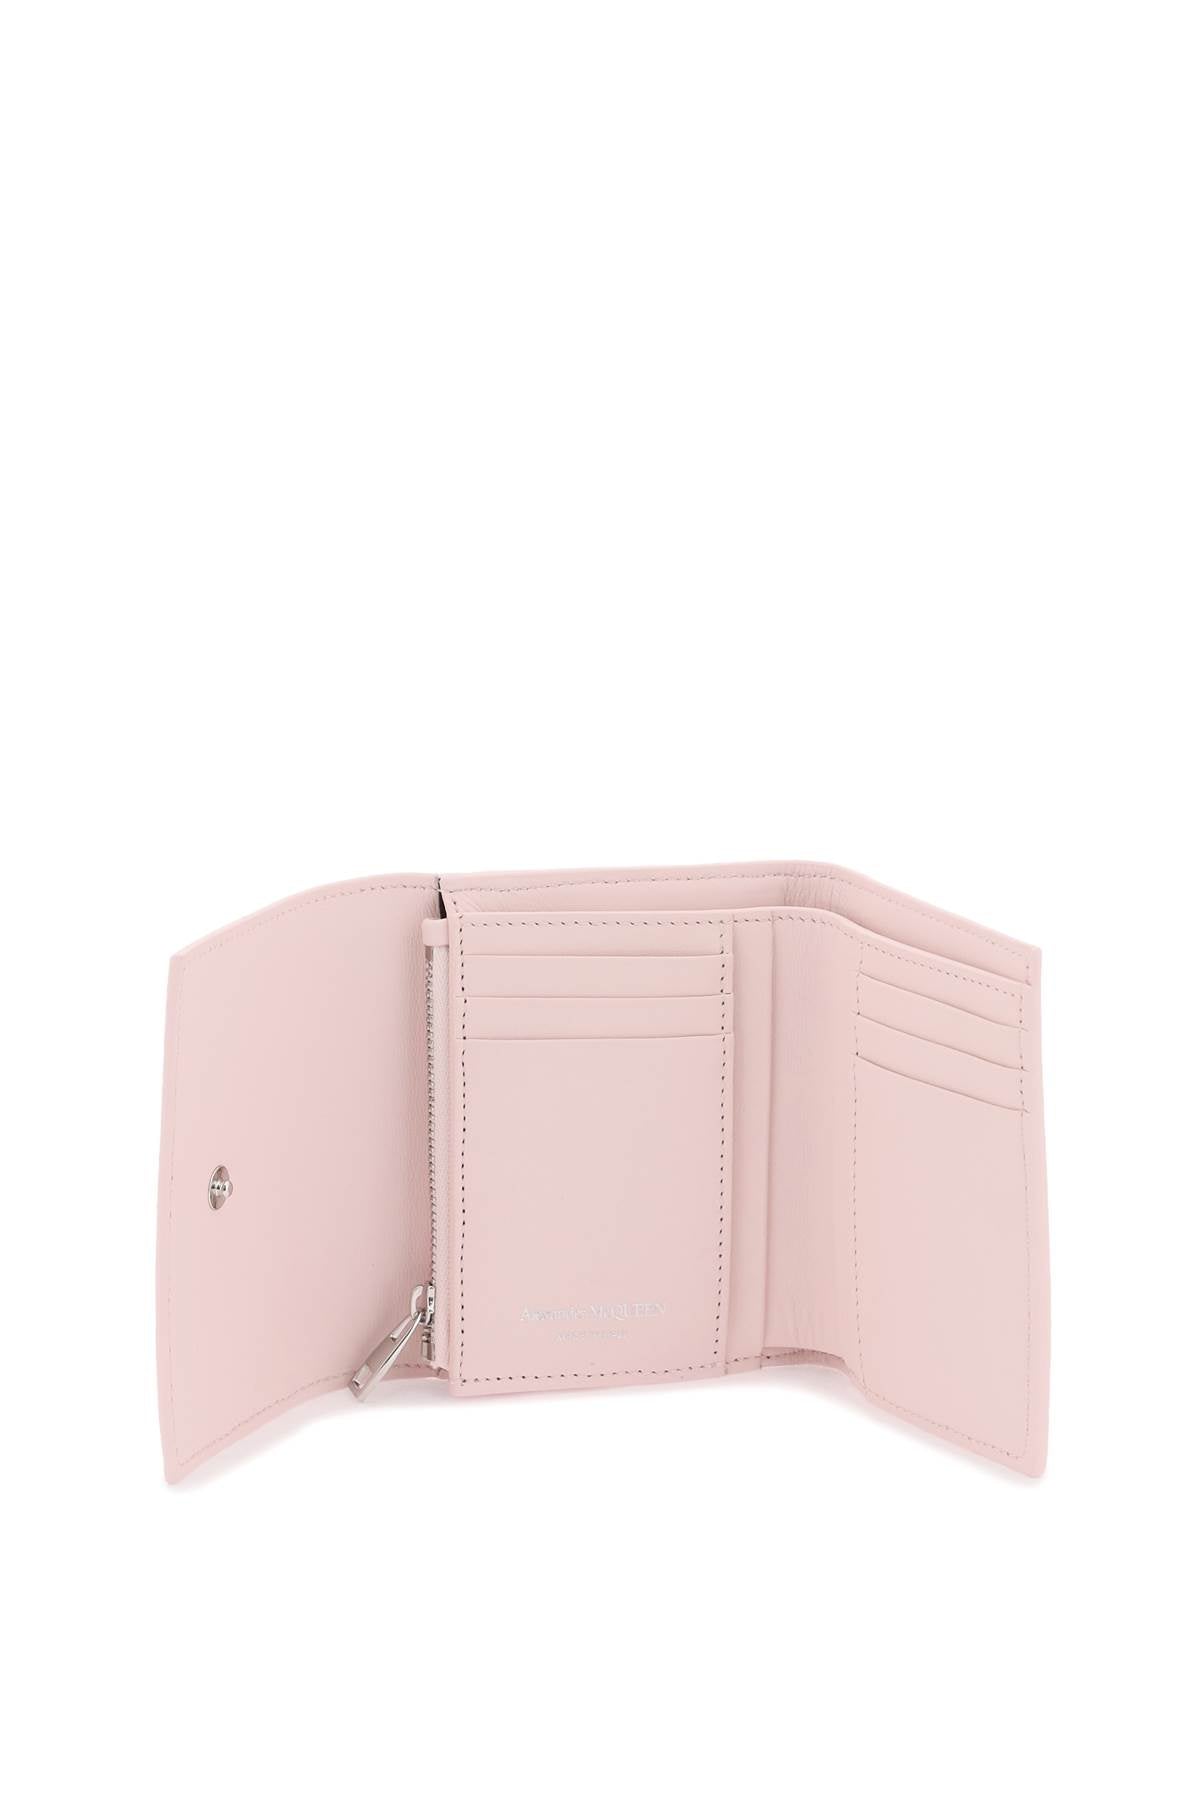 Alexander Mcqueen Compact Skull Wallet   Pink